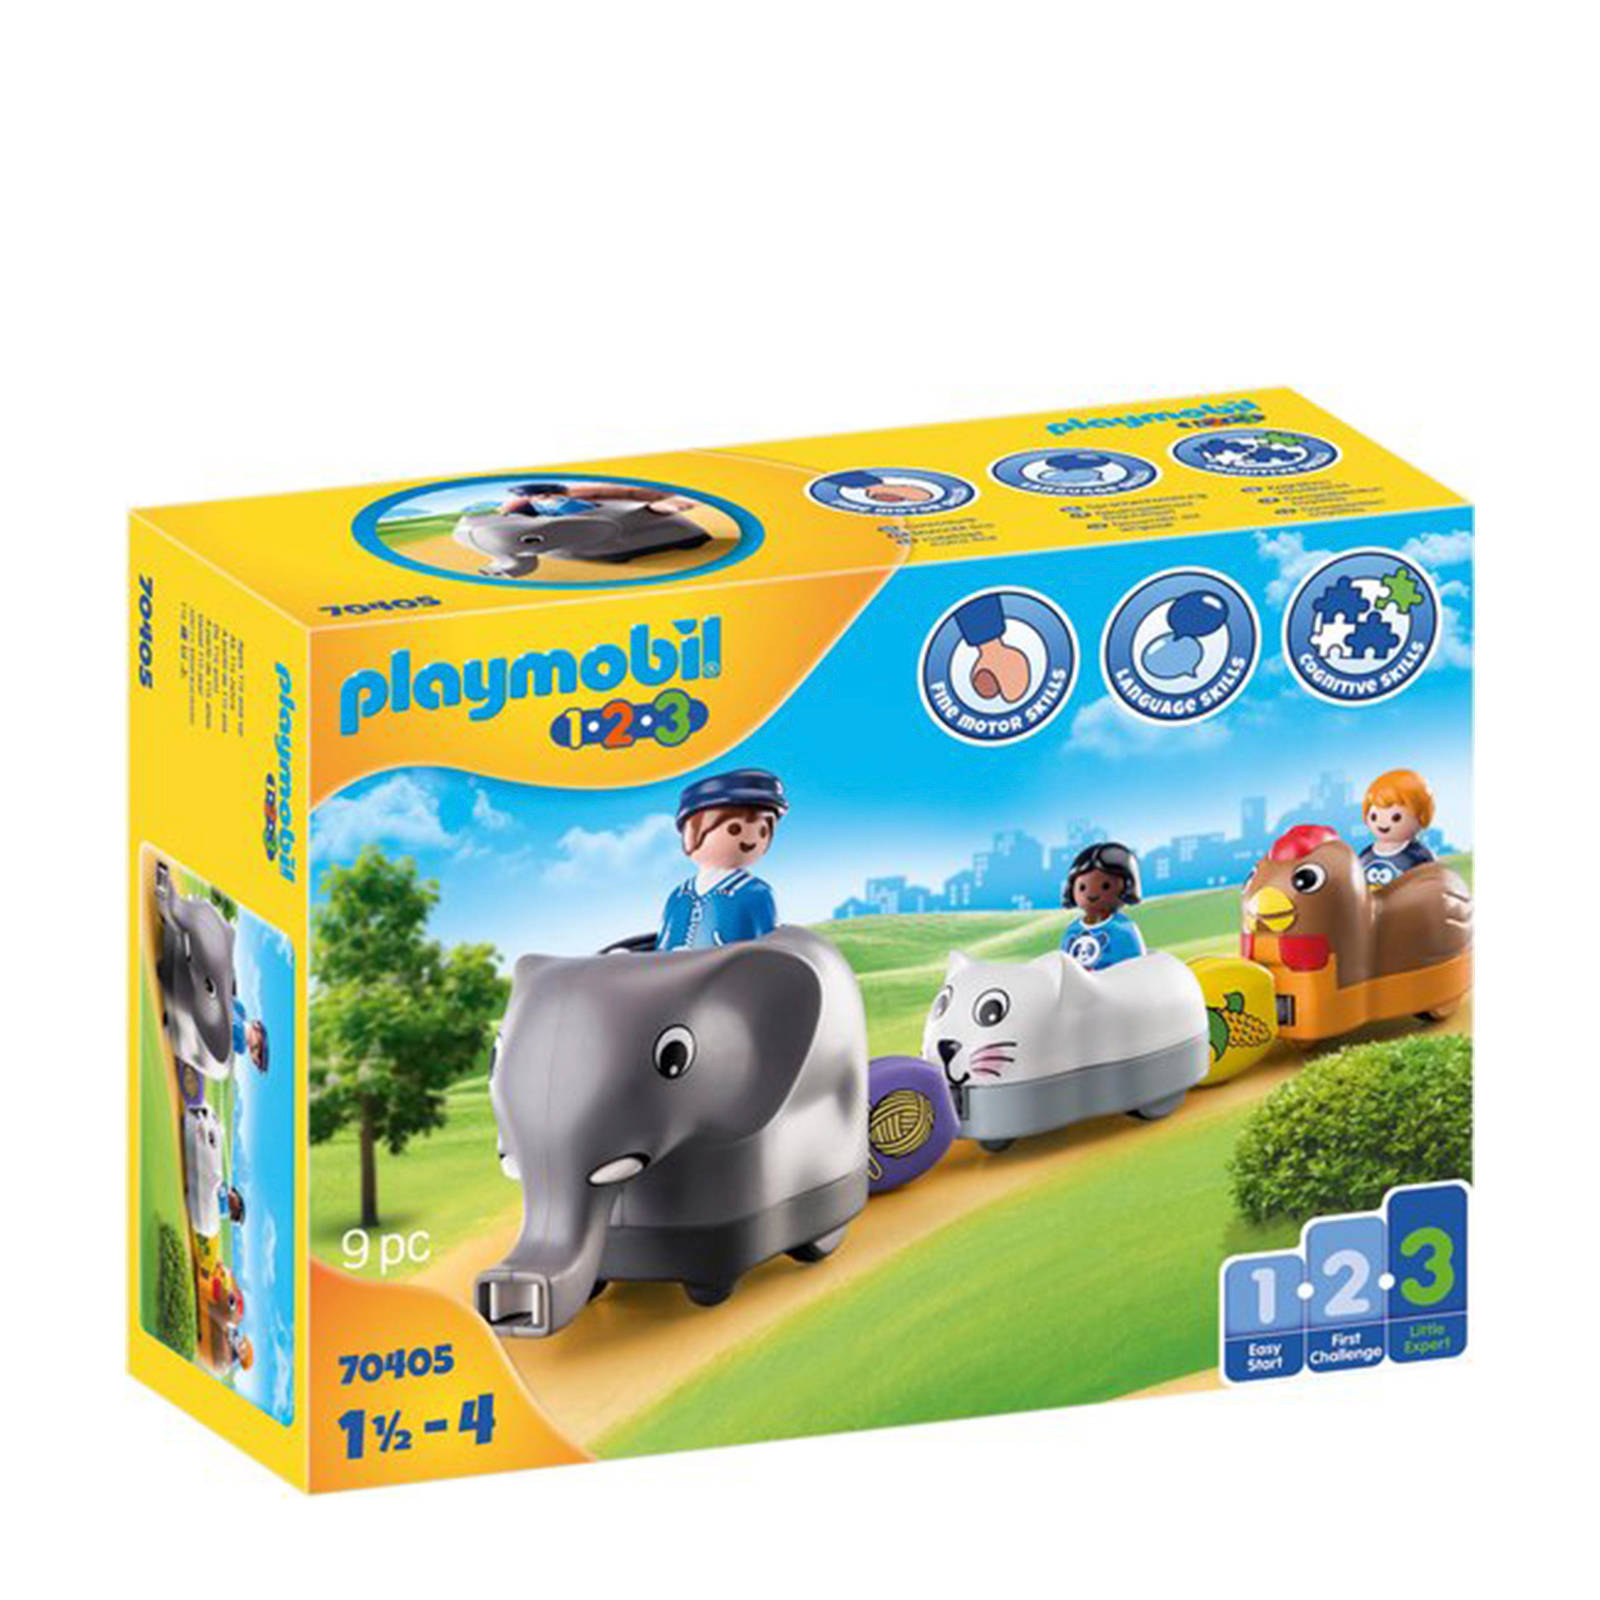 Playmobil ® Constructie speelset Mijn dierentrein(70405 ), 1 2 3 Gemaakt in Europa(9 stuks ) online kopen